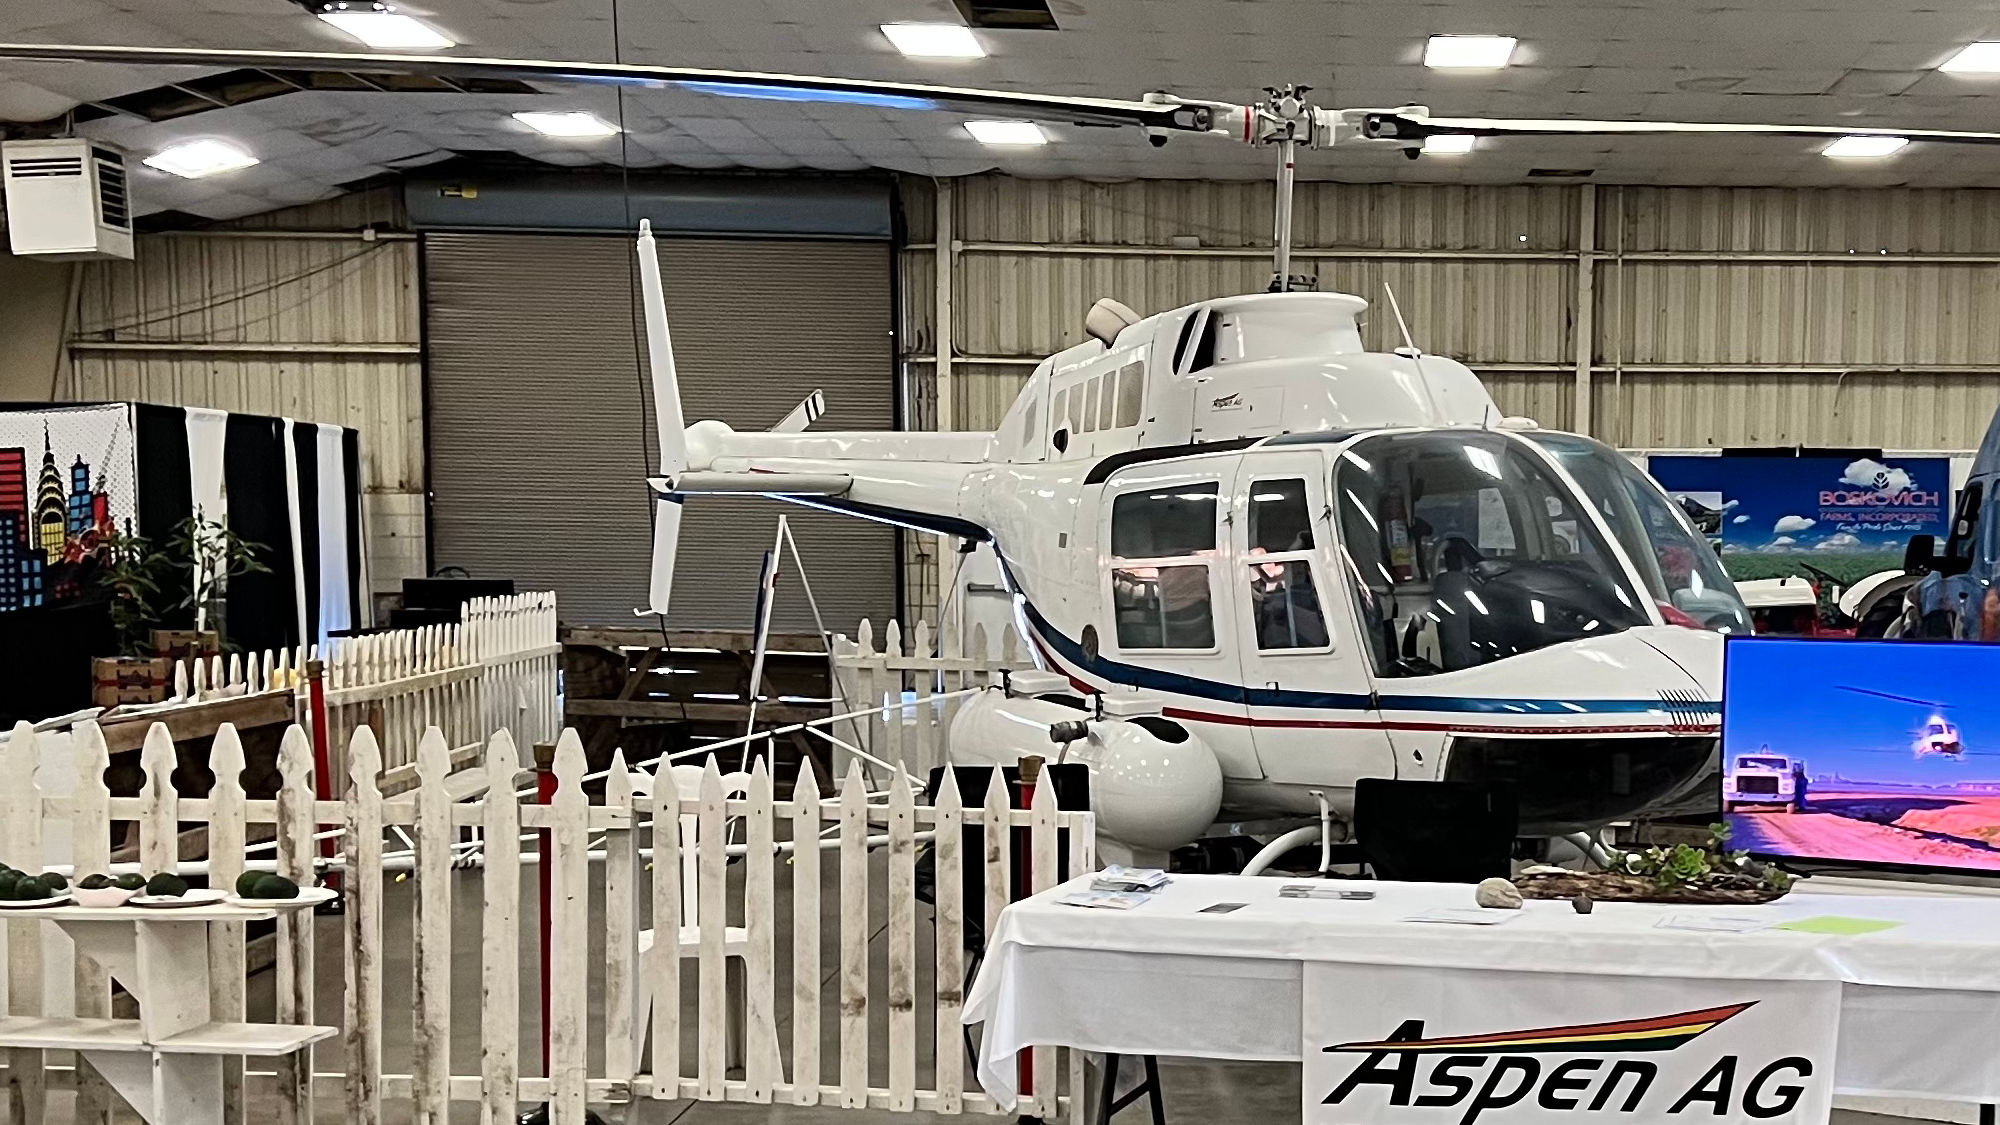 Aspen AG Helicopter